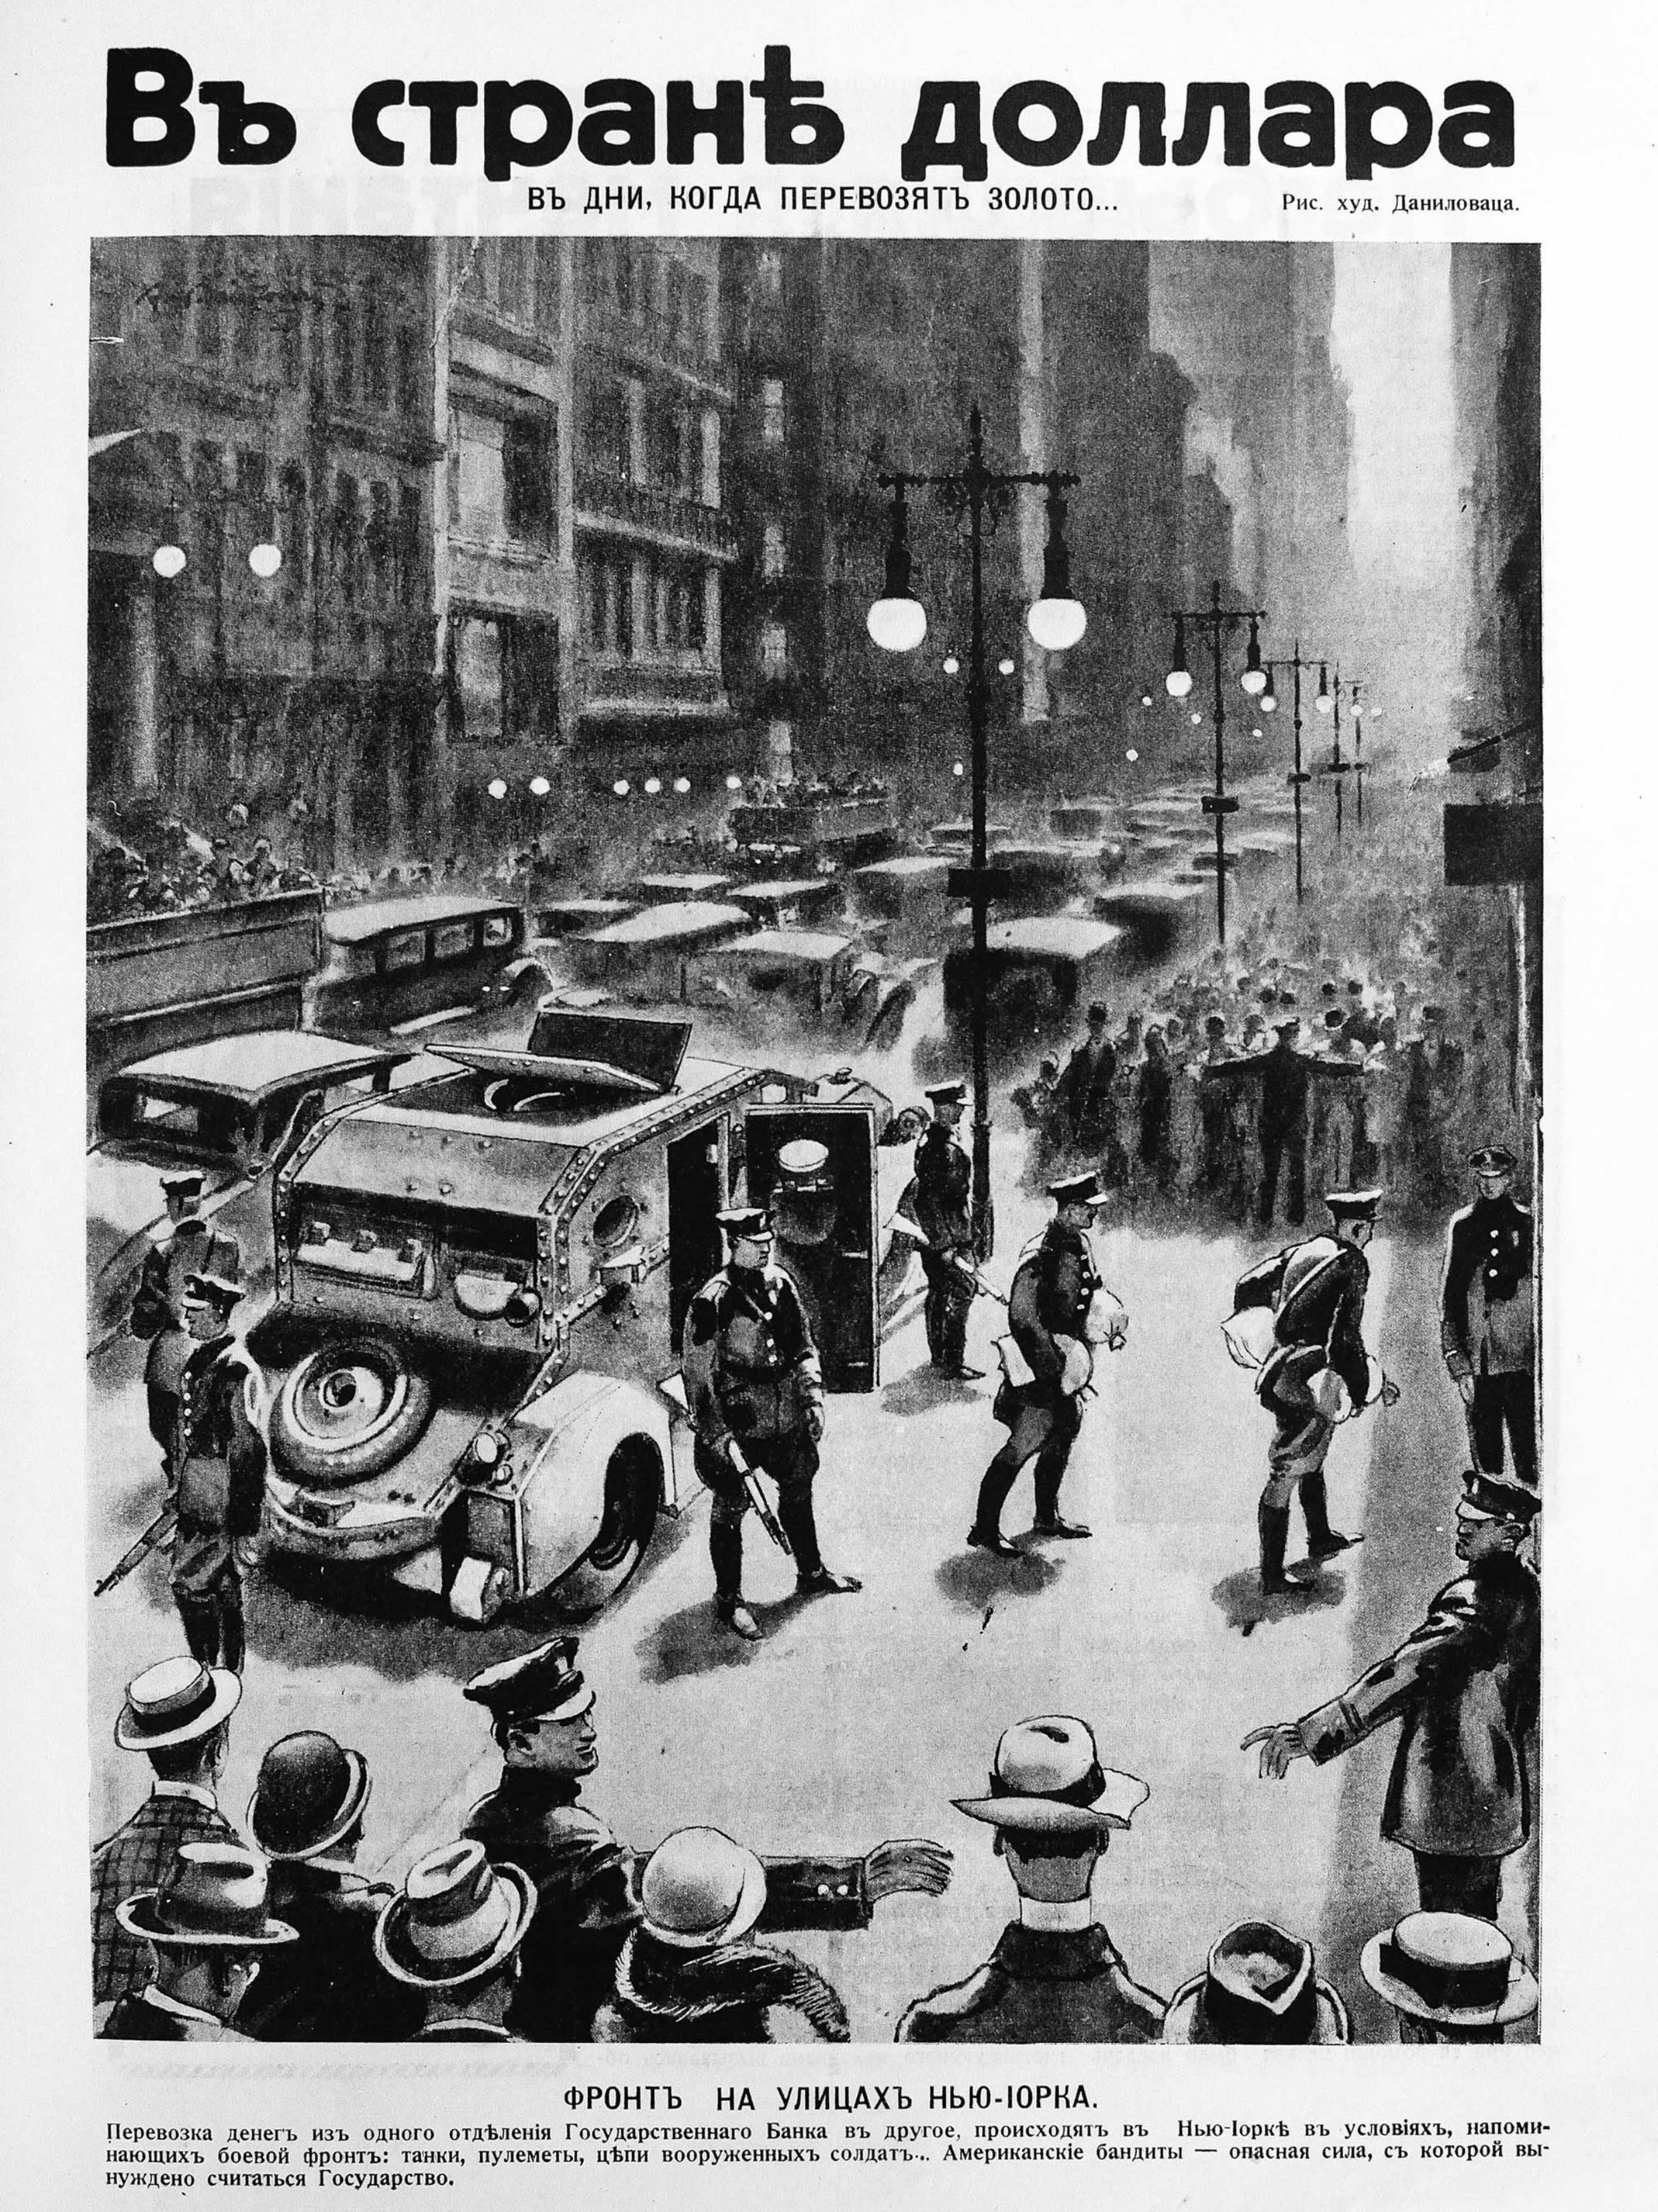 Даниловац И. Фронт на ул. Нью-Йорка. ИР 1930 №17, с. 7.jpg